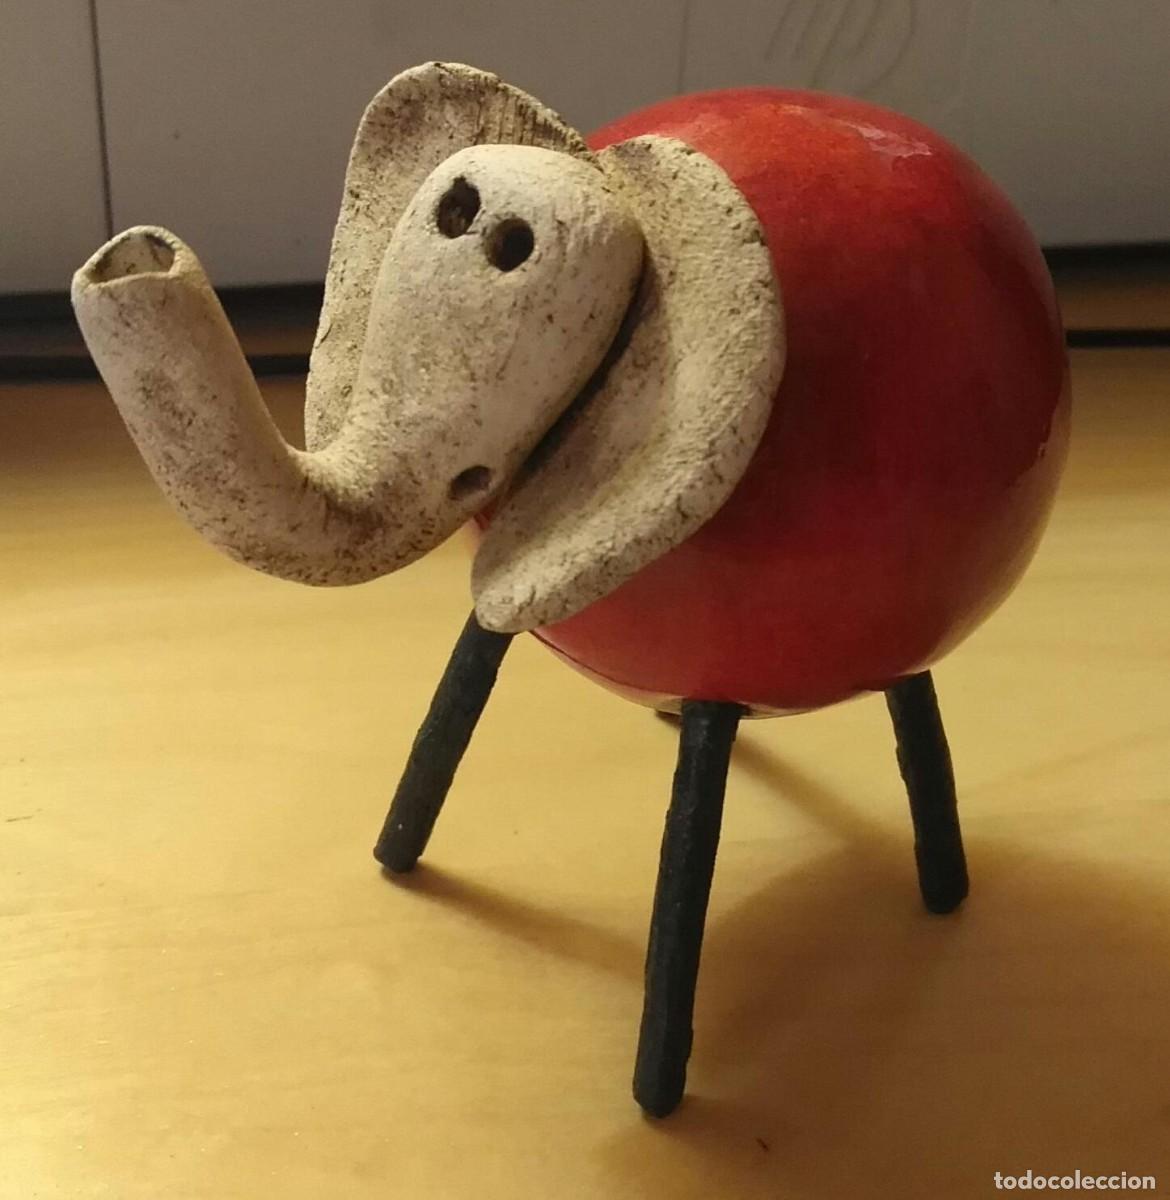 figura decorativa elefante de la suerte - artes - Compra venta en  todocoleccion